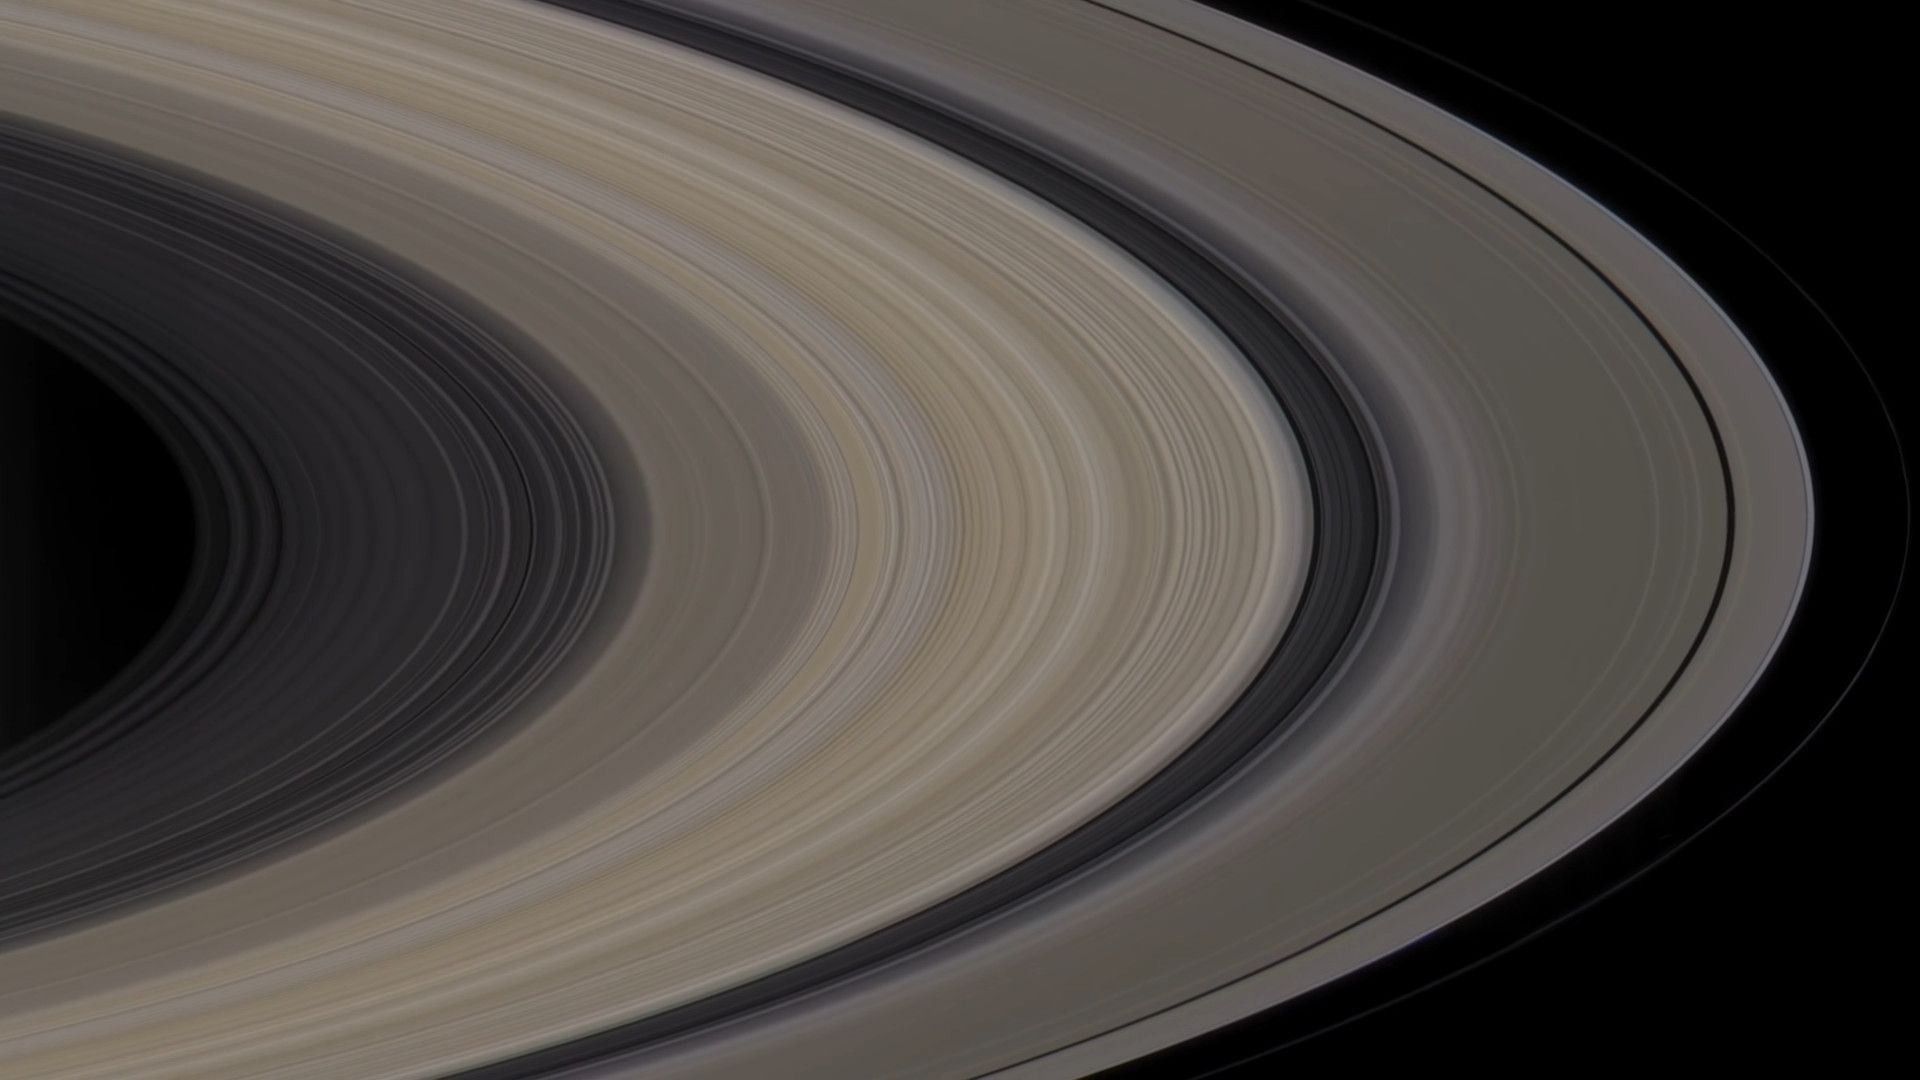 3亿年后土星环将消失土星正以最坏的情况失去光环